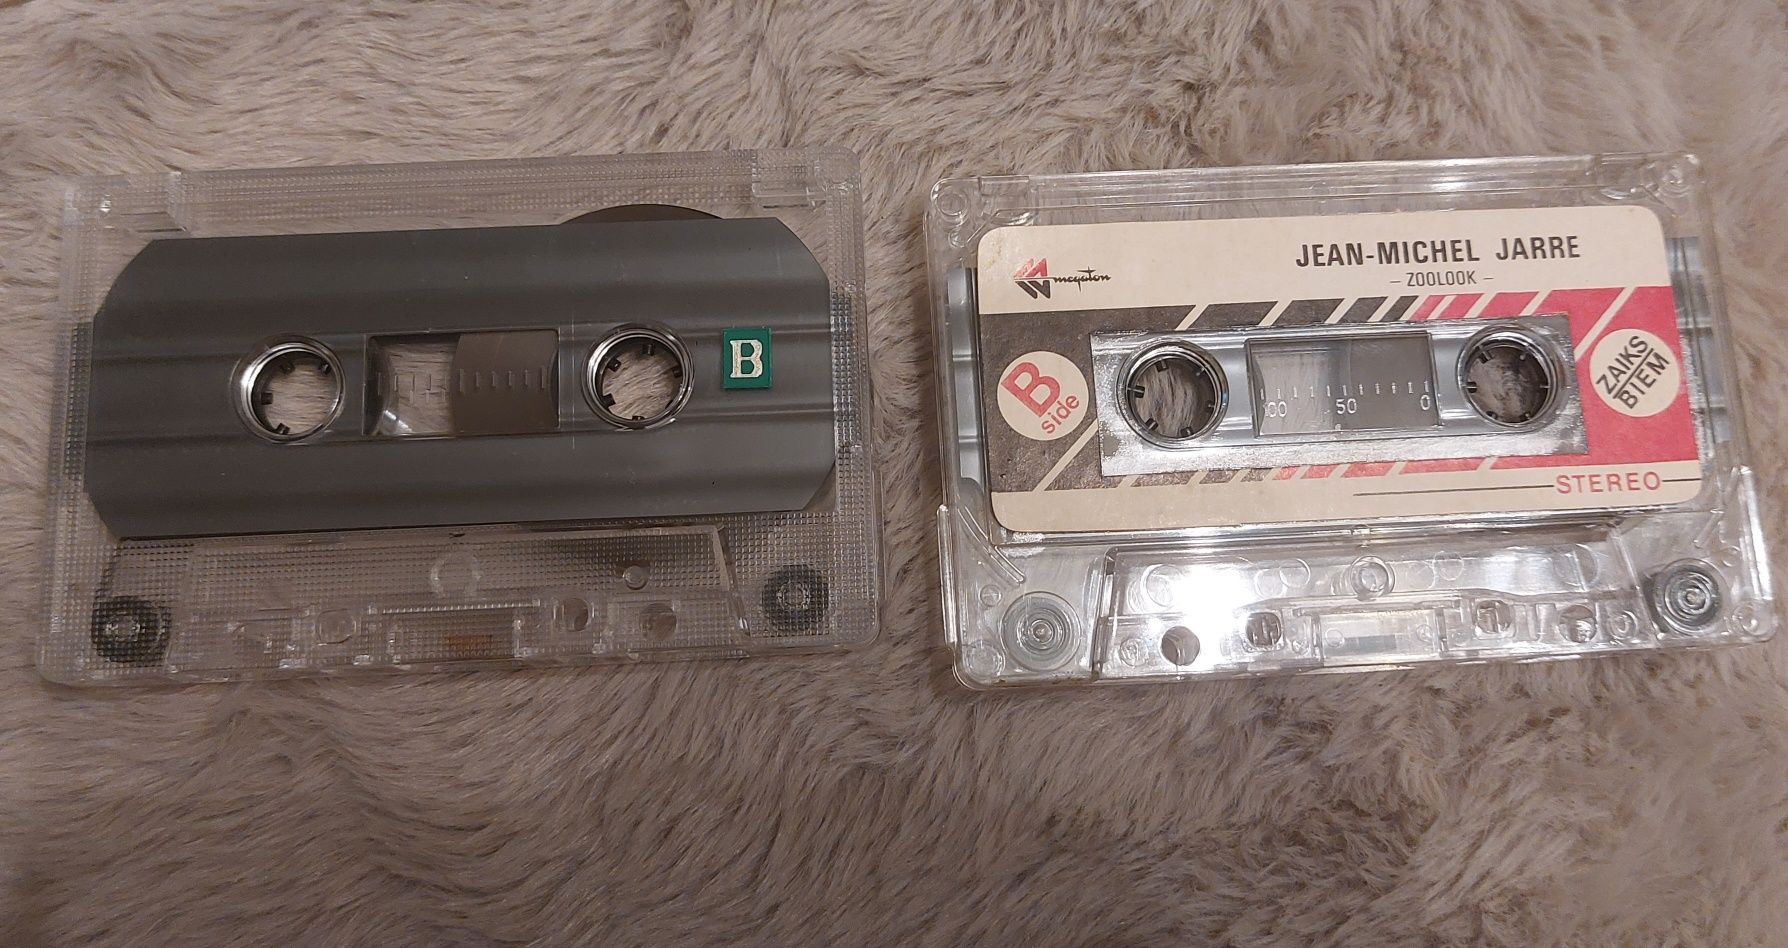 Jean-Michel Jarre 2 kasety magnetofonowe